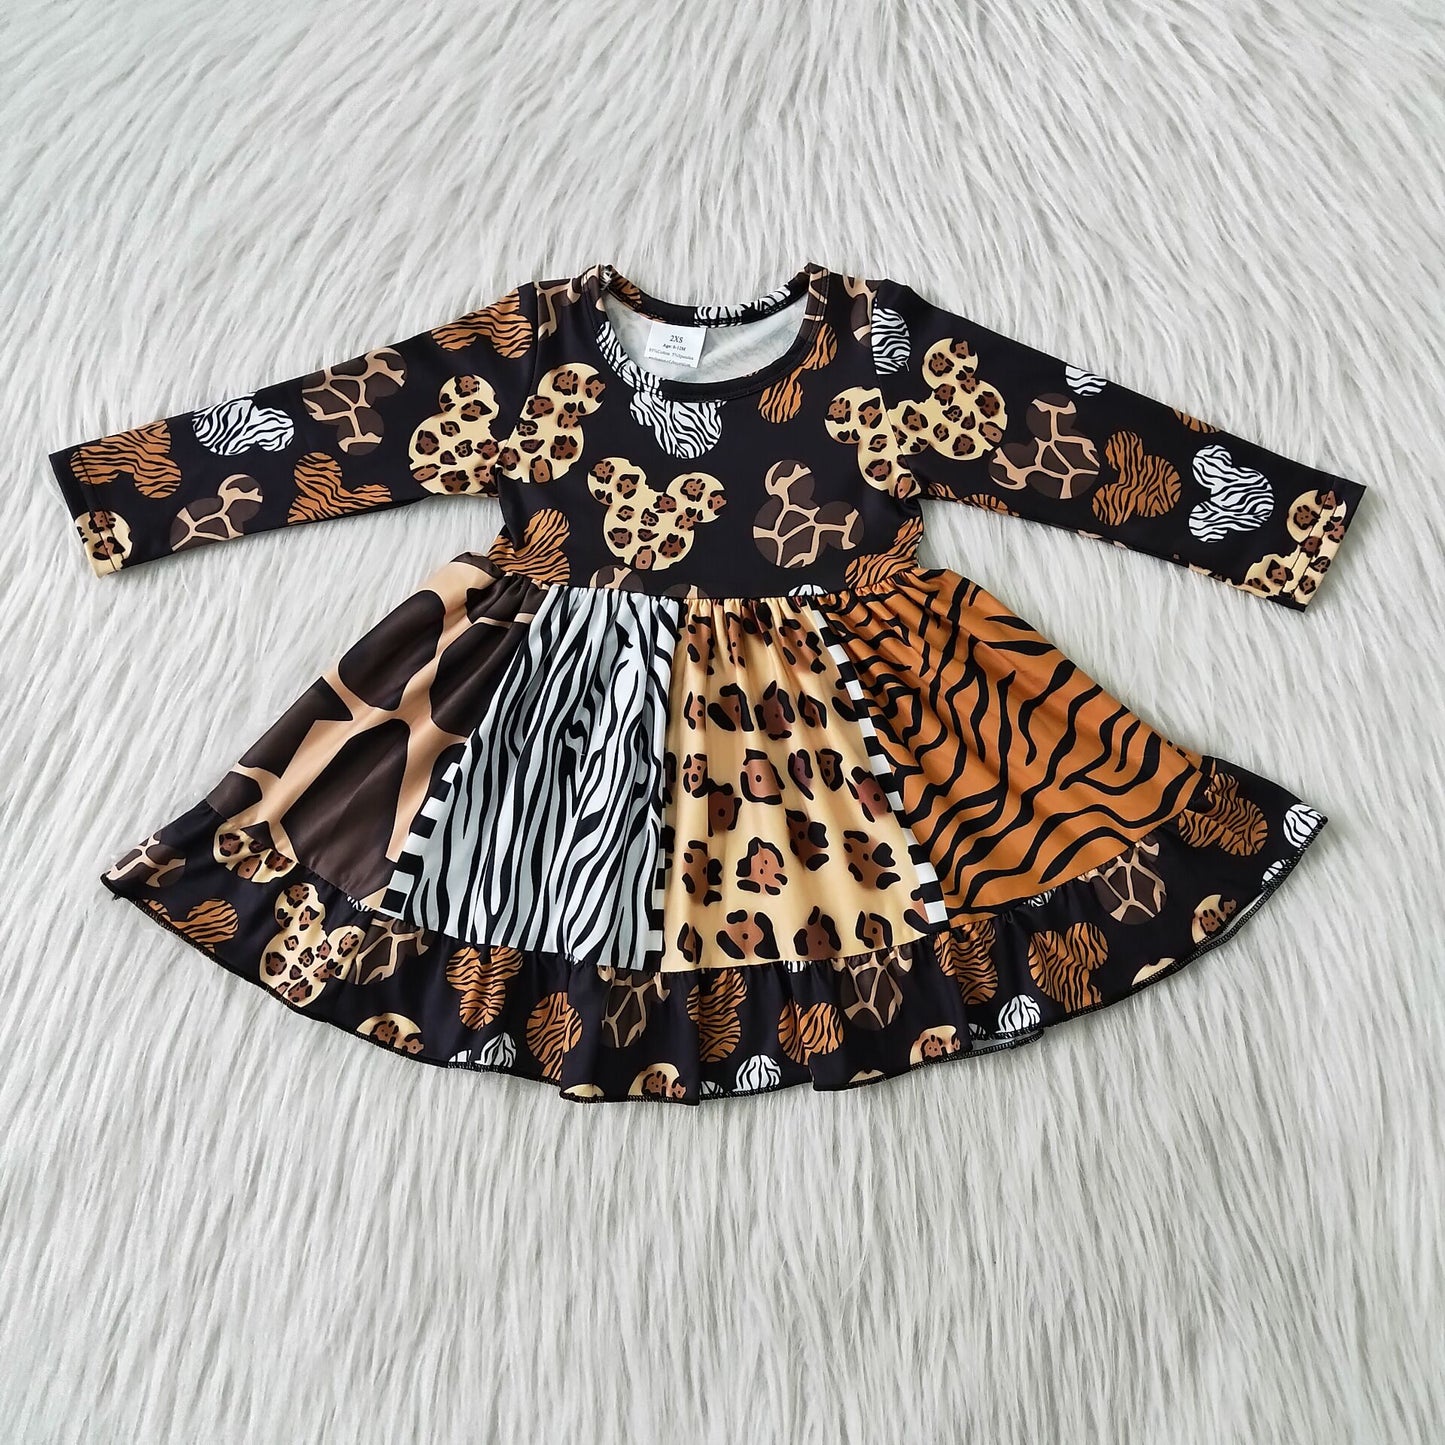 leopard long sleeve dress big skirt with belt